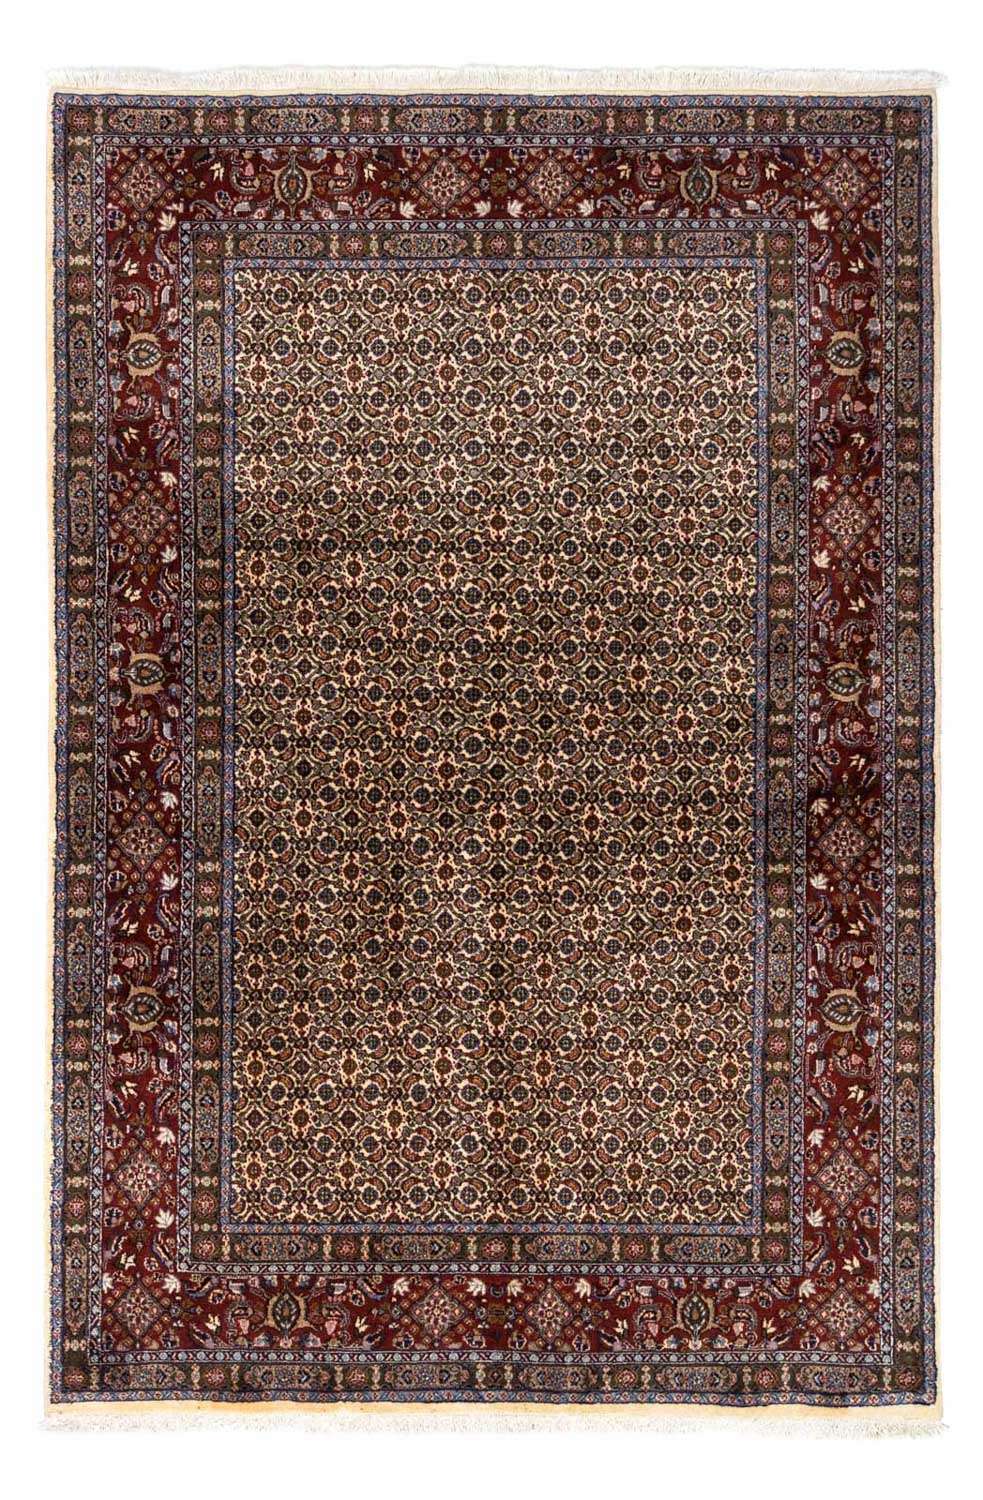 Dywan perski - Klasyczny - 237 x 168 cm - beżowy